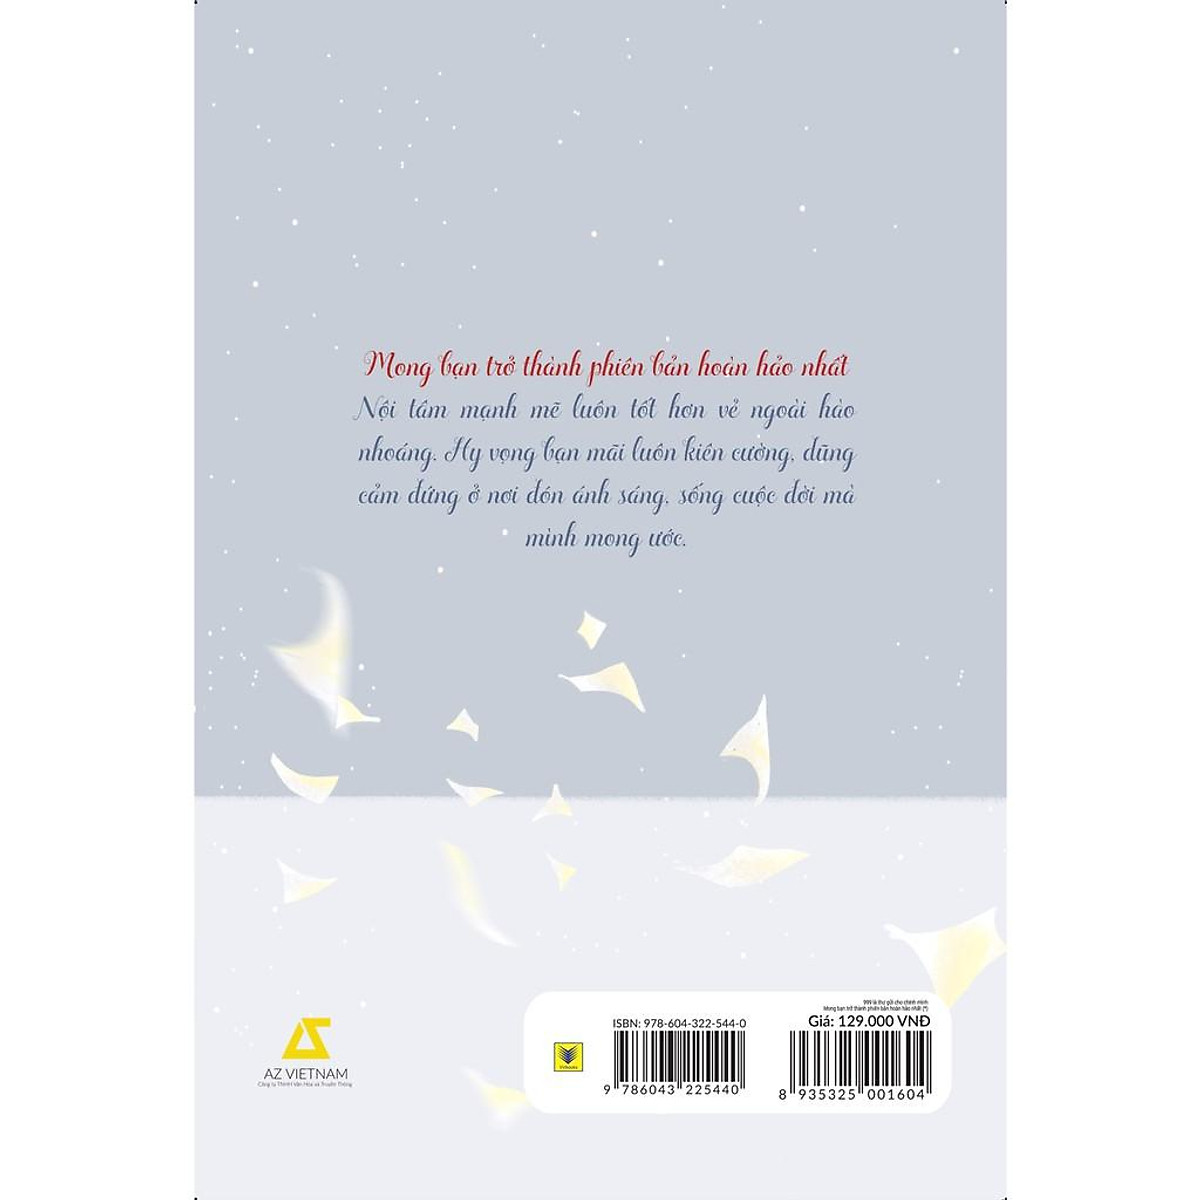 Sách - 999 Lá Thư Gửi Cho Chính Mình (*) – Mong Bạn Trở Thành Phiên Bản Hoàn Hảo Nhất (Tái bản 2021)